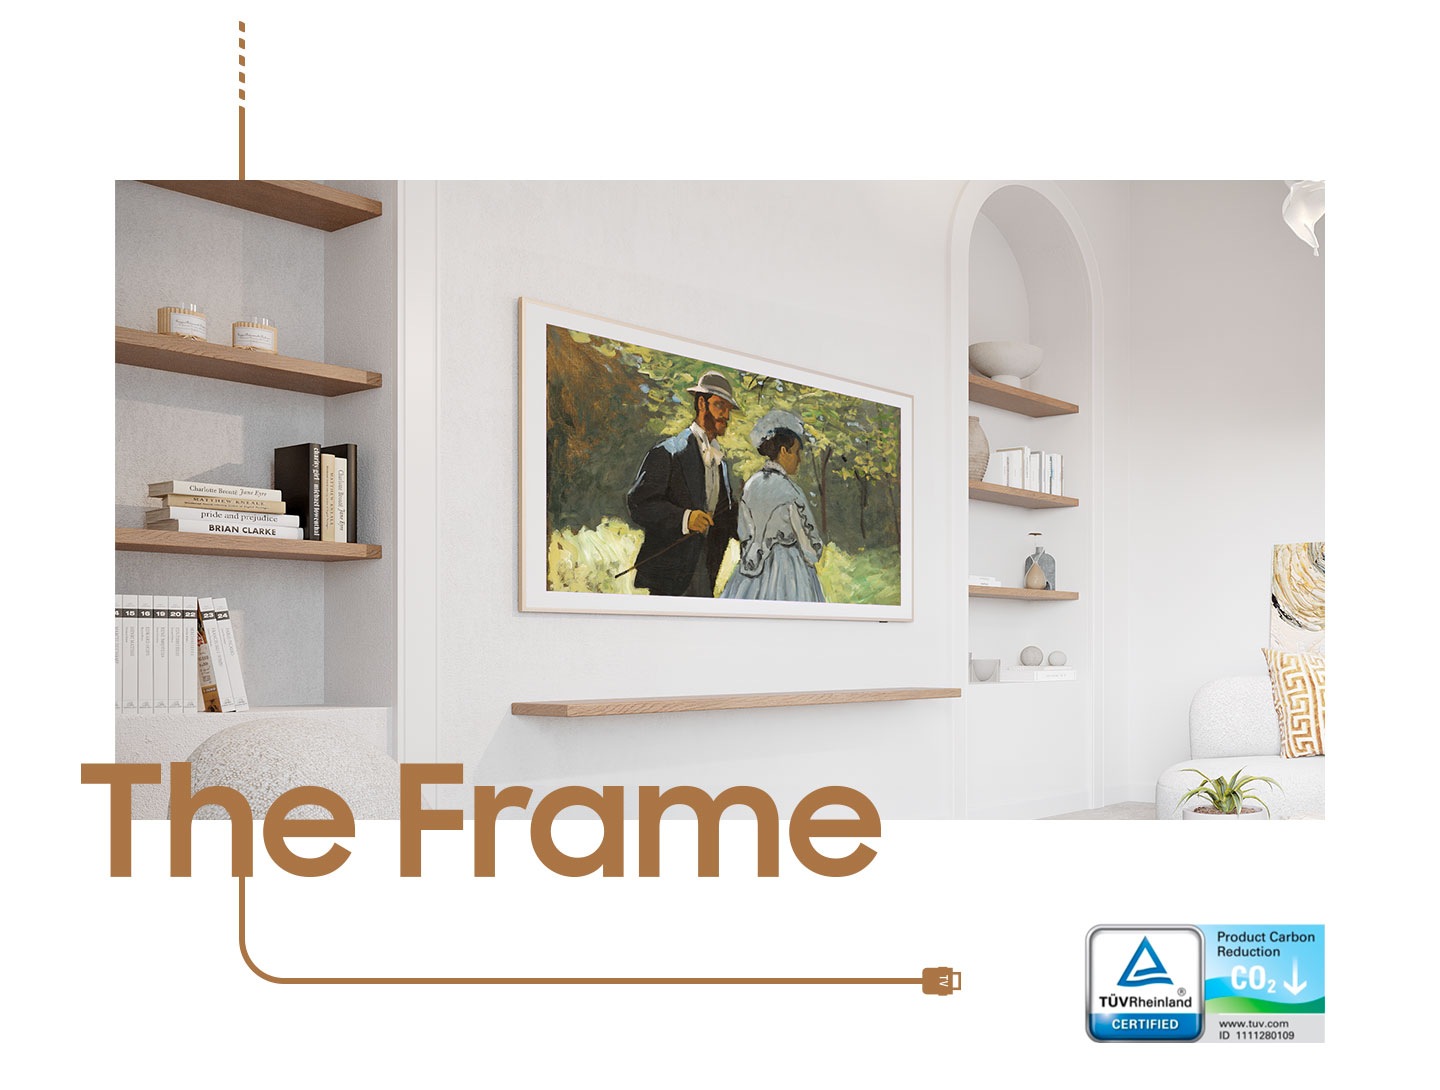 Rám visí na stěně v obývacím pokoji a na obrazovce zobrazuje obraz páru. Logo Product Carbon Reduction od TUVRheinland CERTIFIED je na pravé spodní straně.